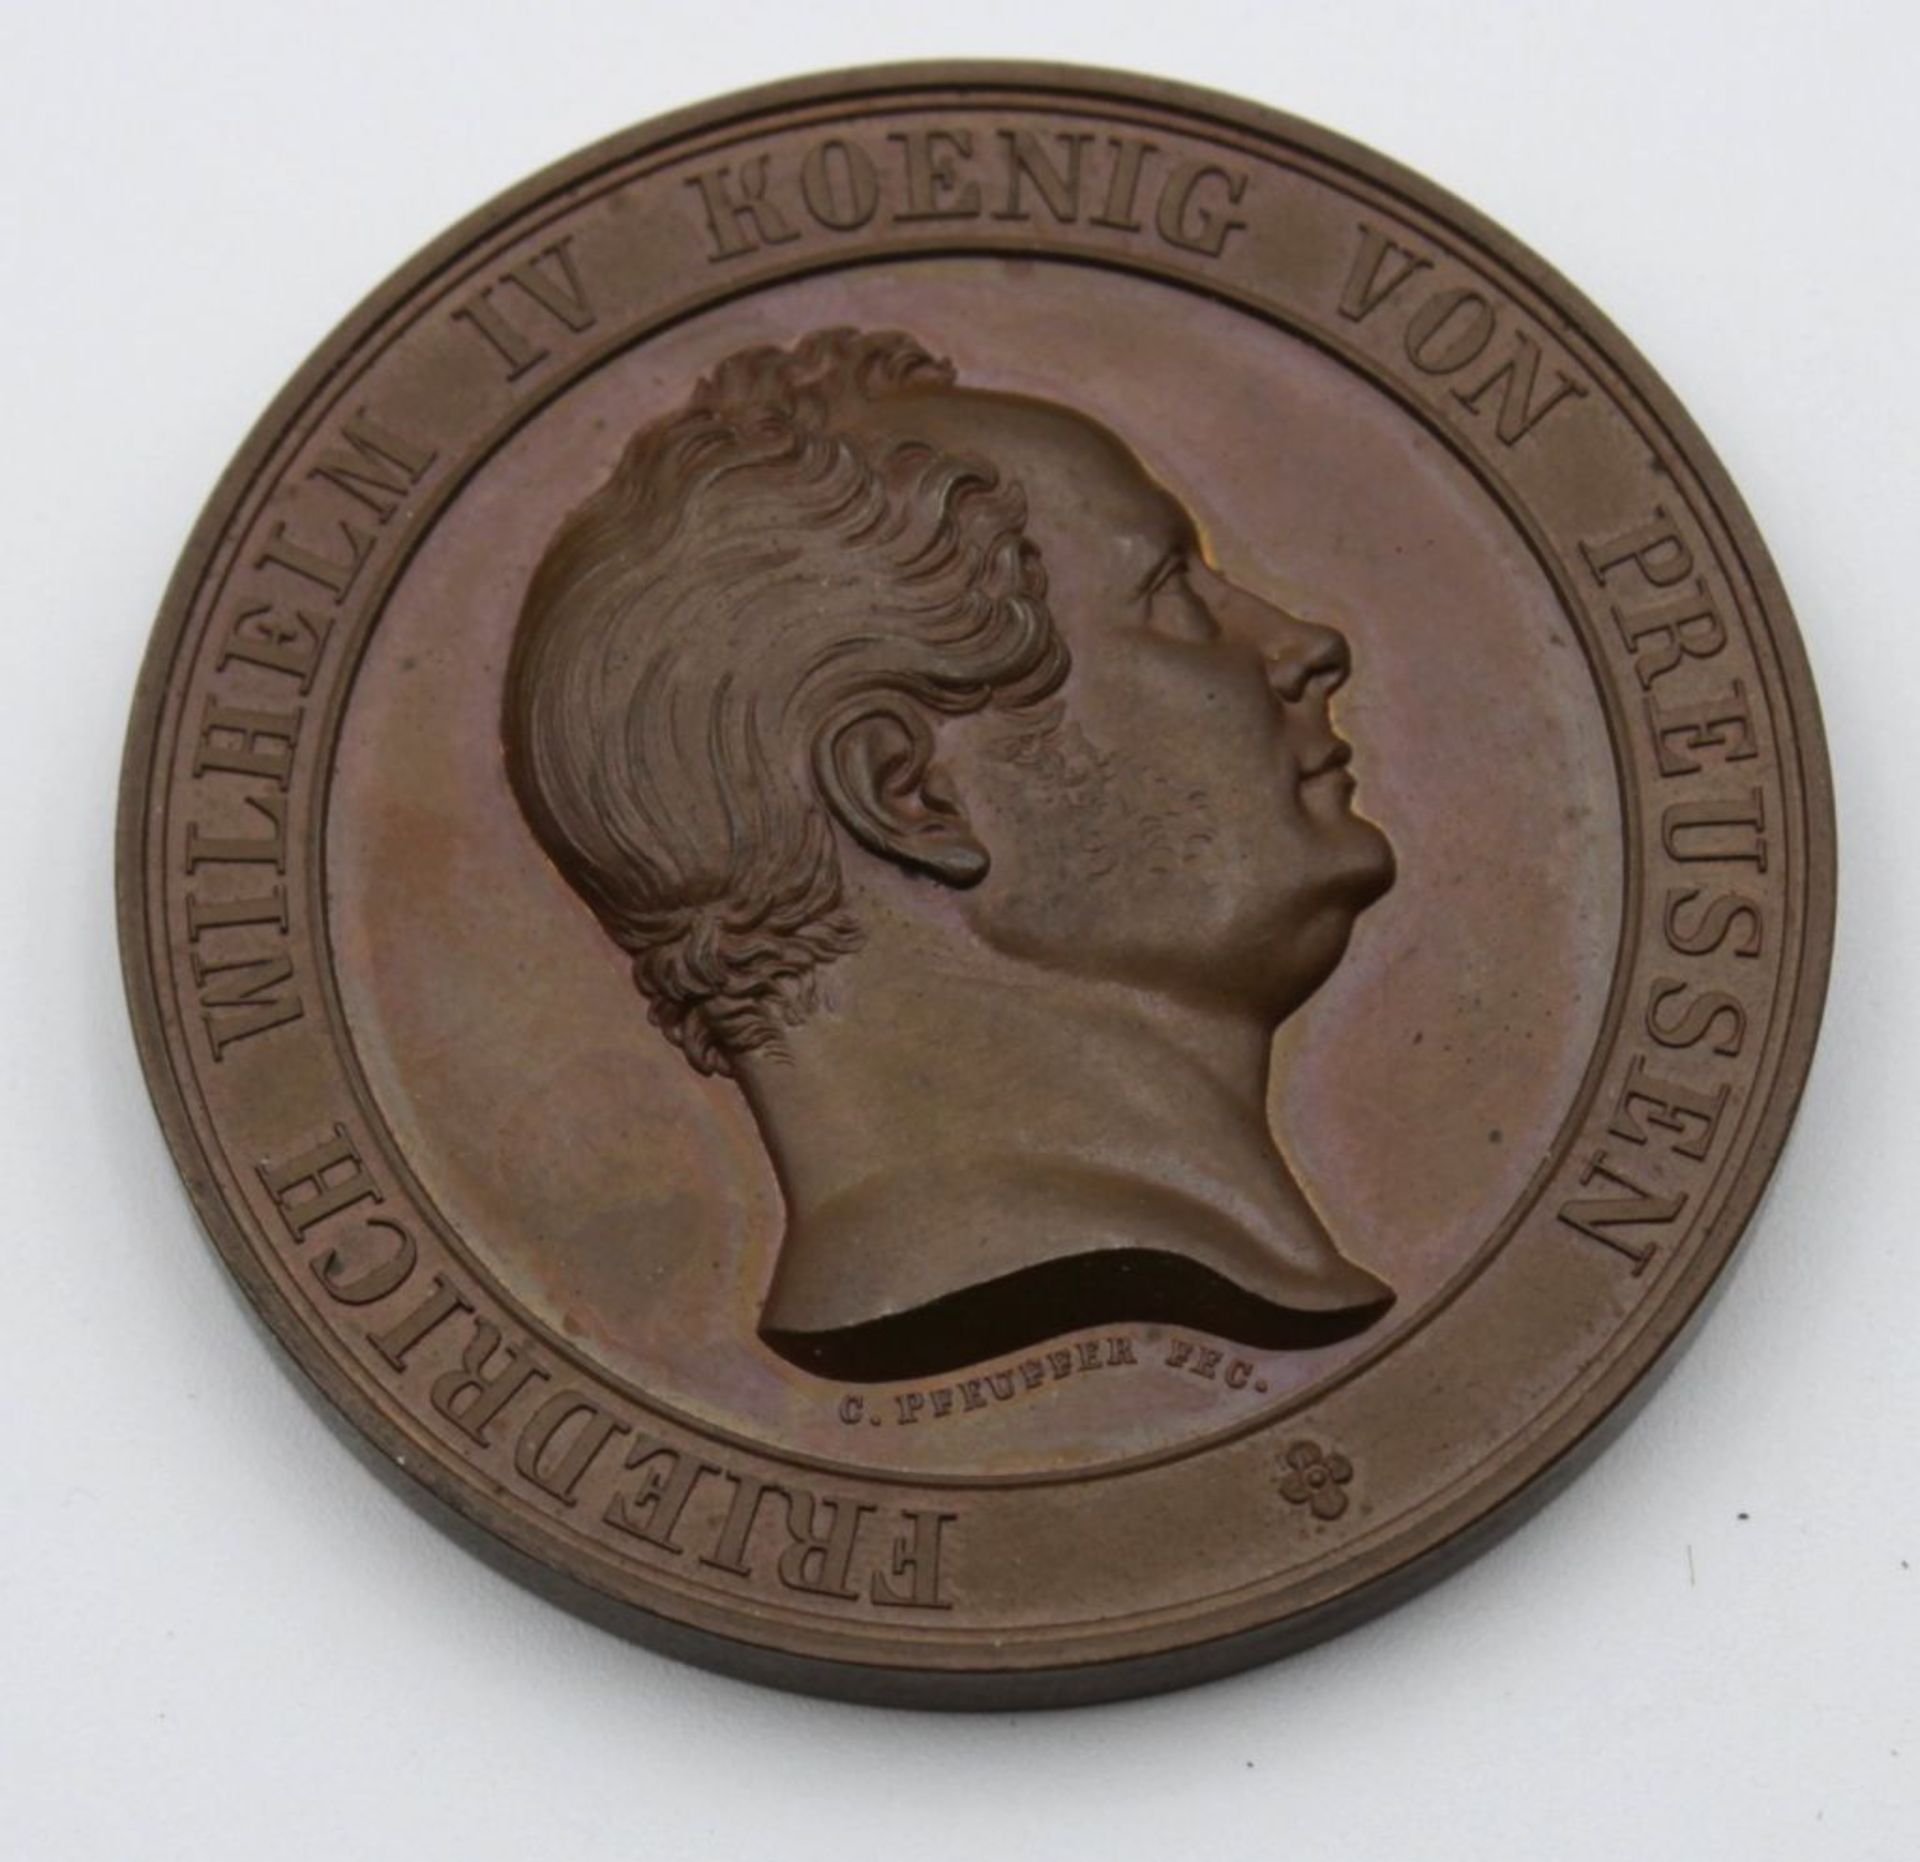 Preiss-Medaille "Ausstellung Vaterländischer Gewerbeerzeugnisse vom Jahre 1844" im Etui.- - -22.61 % - Bild 2 aus 3